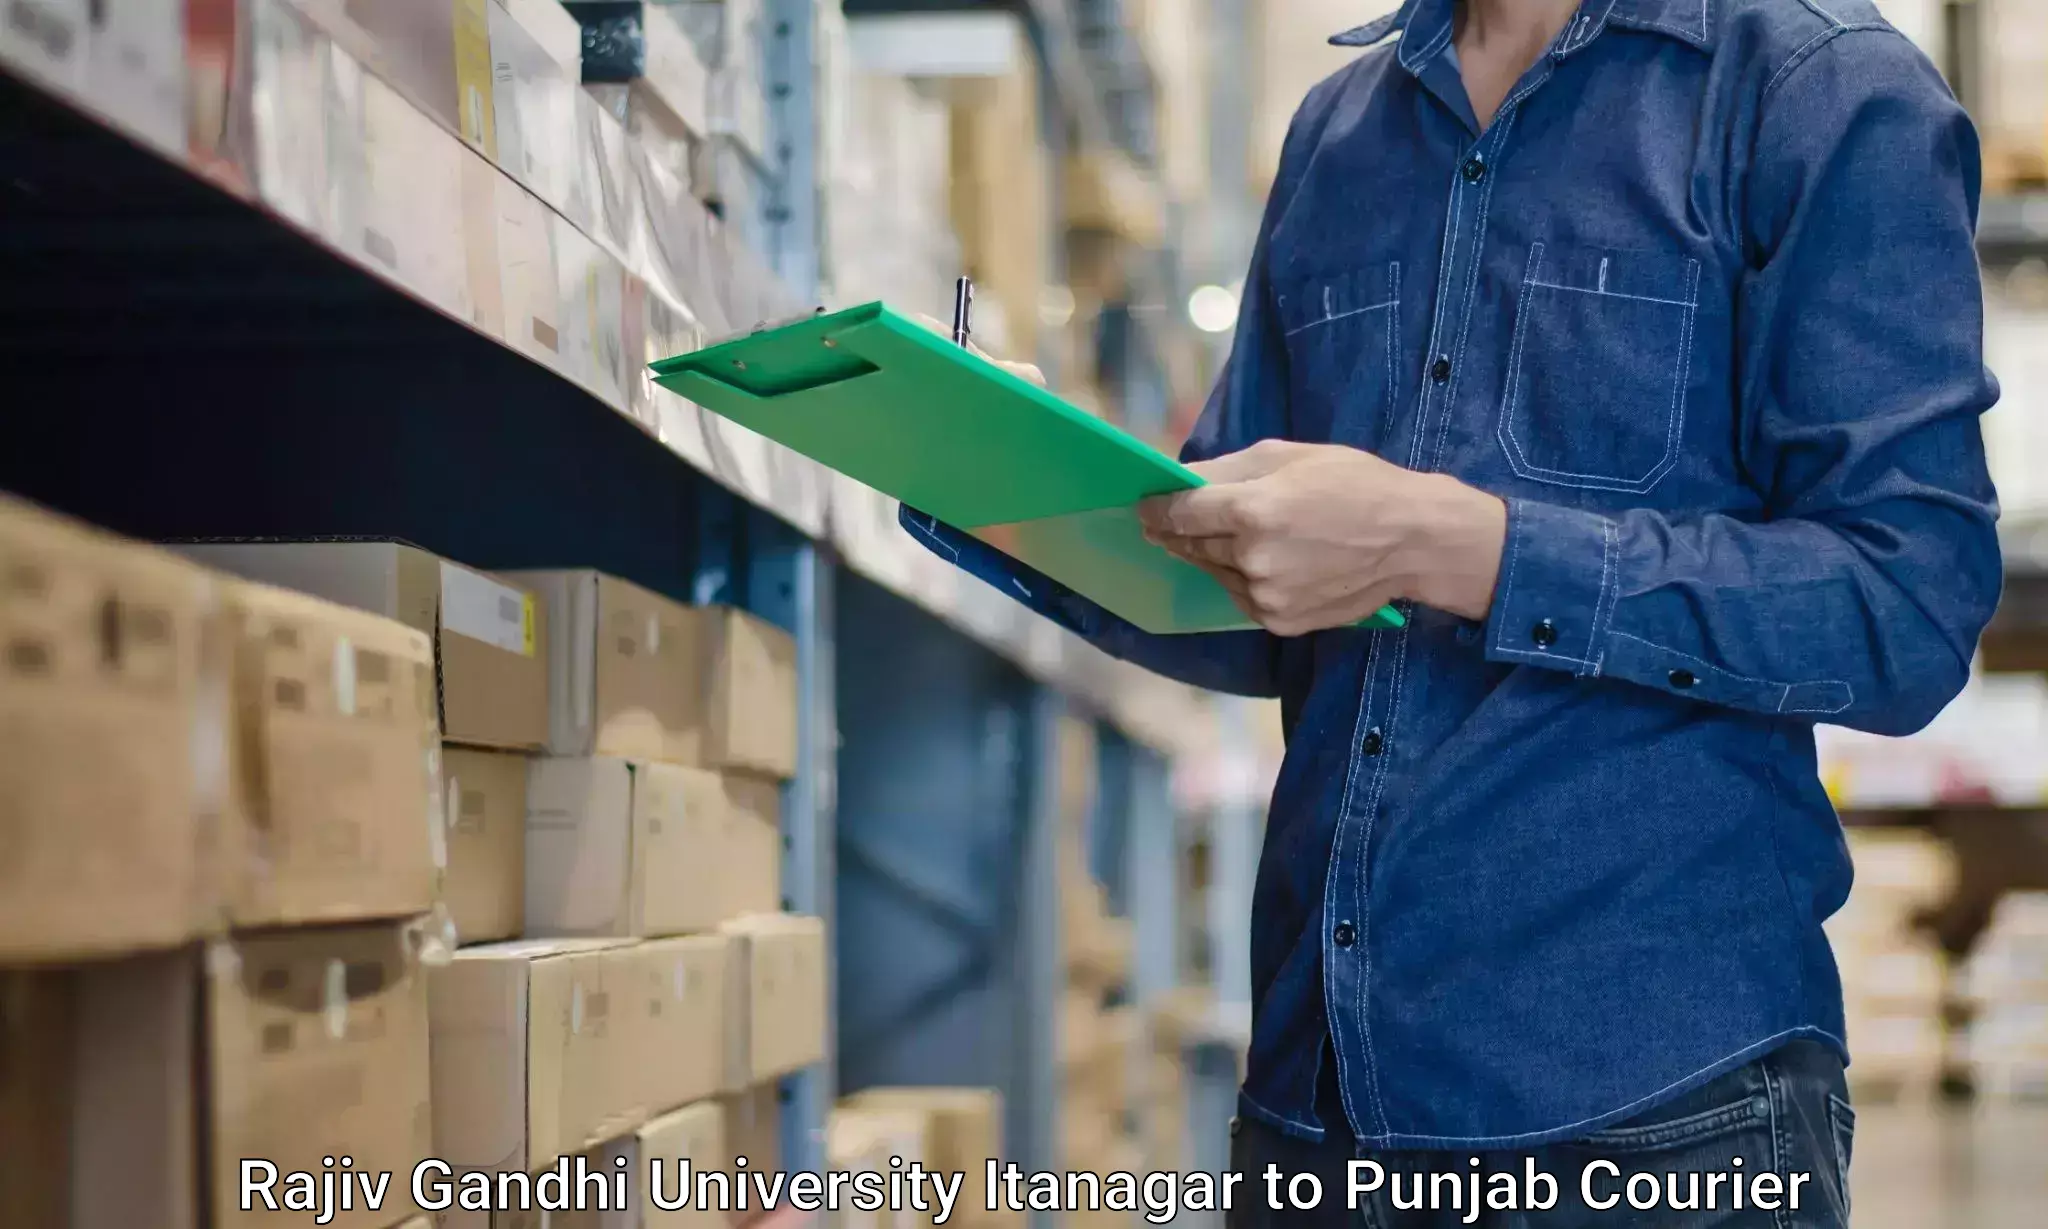 Furniture transport and storage Rajiv Gandhi University Itanagar to Dinanagar